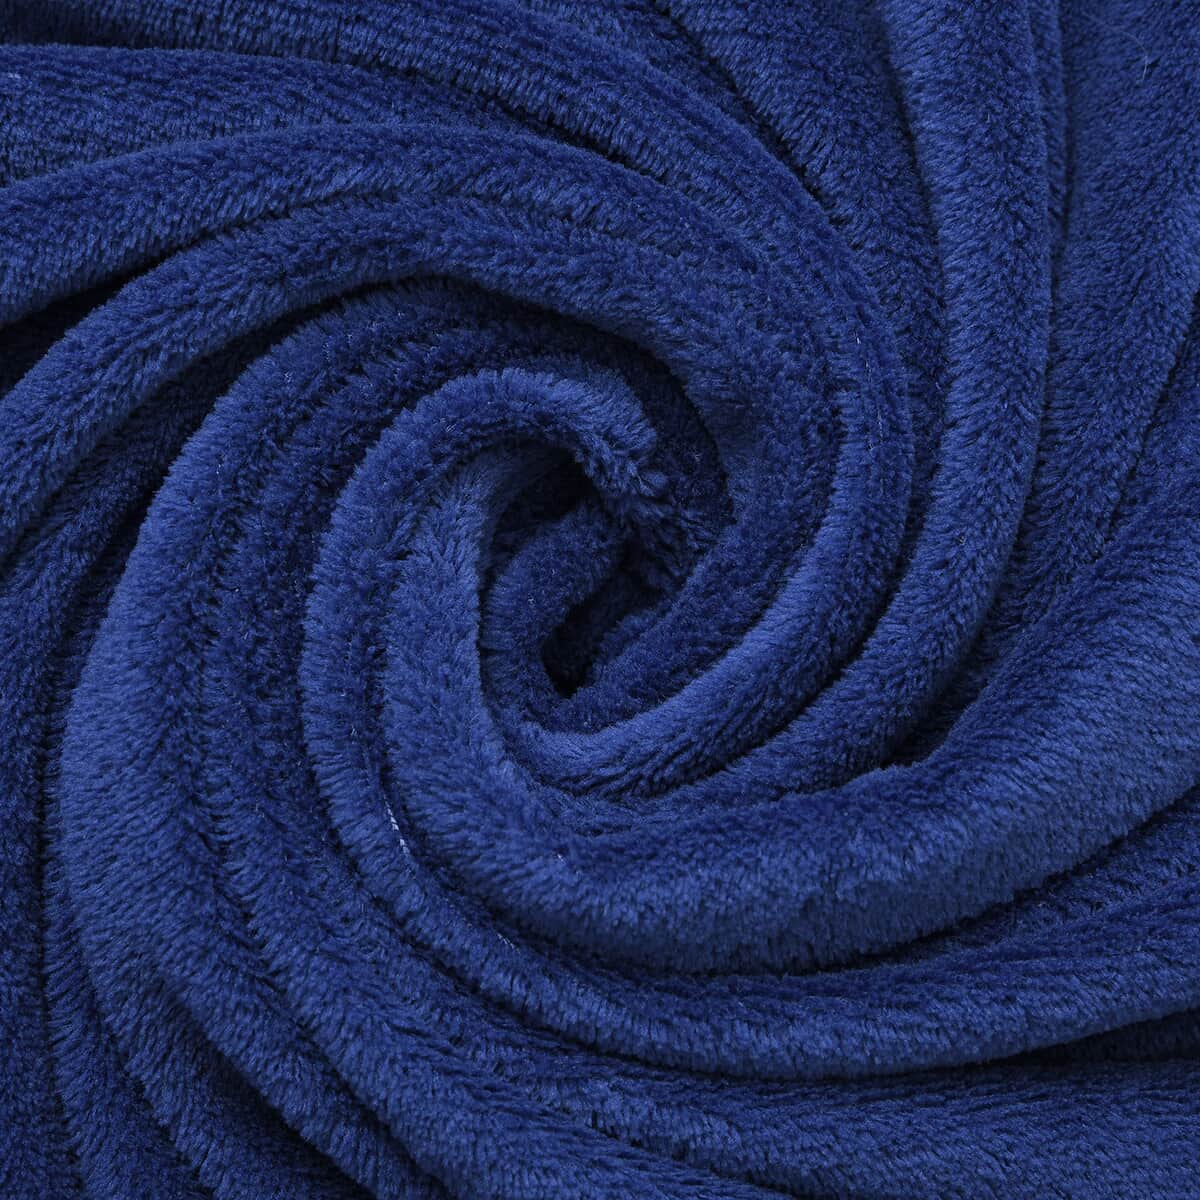 Homesmart Dark Blue Solid Super Soft and Warm Coral Fleece Blanket image number 3